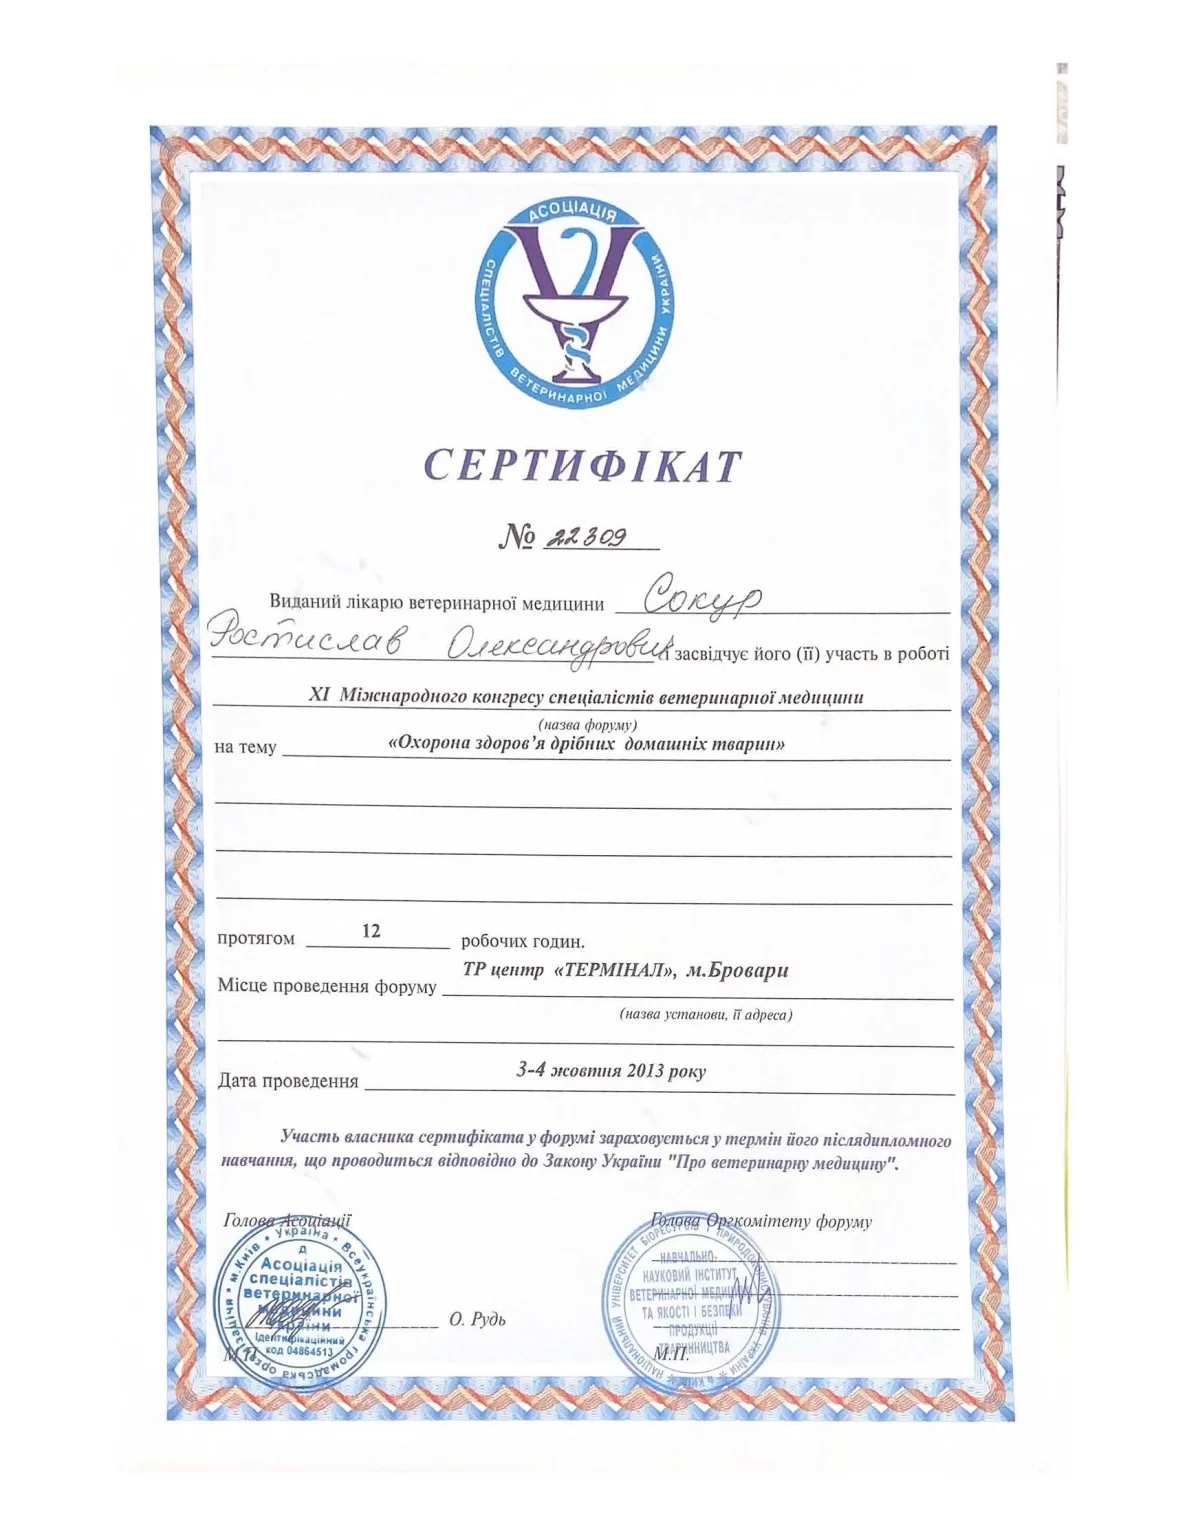 Сертифікат учасника ветеринарної конференції Р.Сокур